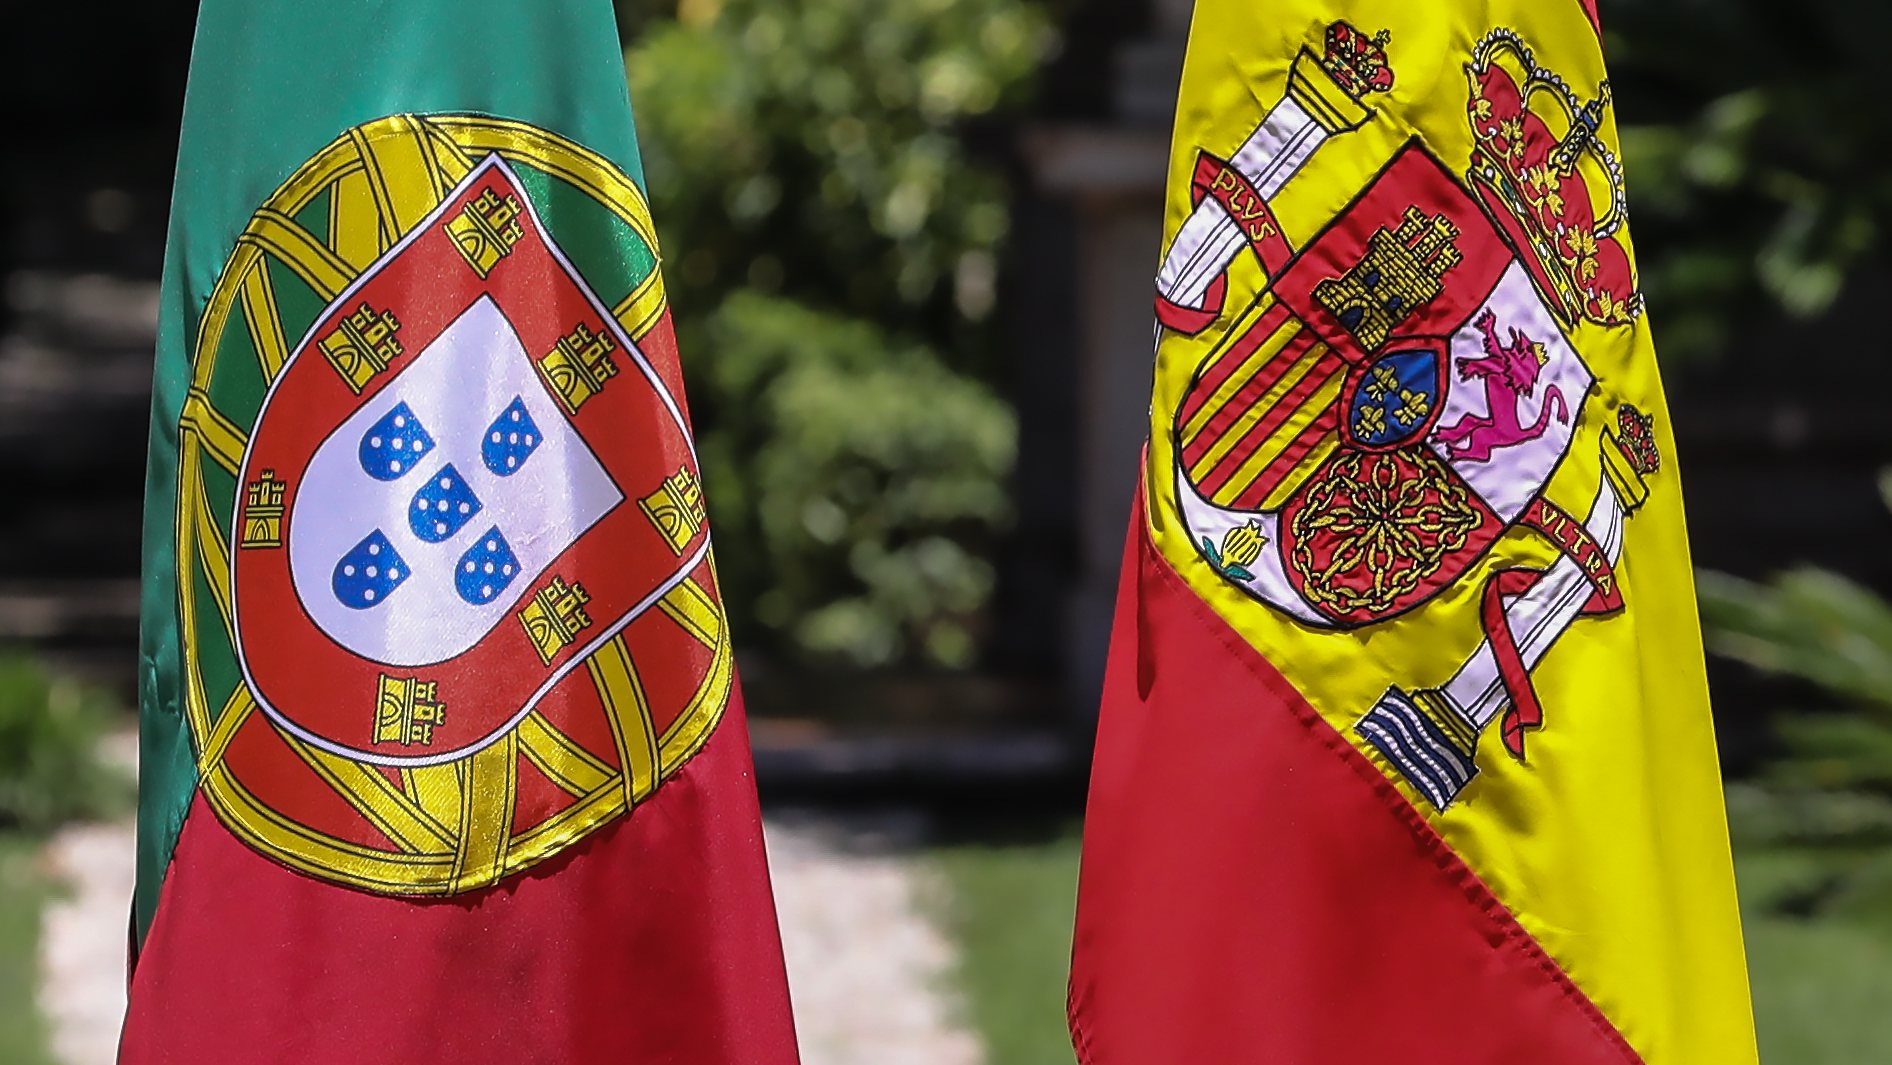 Bandeiras de Portugal e Espanha, Lisboa, 06 de julho de 2020. ANTÓNIO COTRIM/LUSA